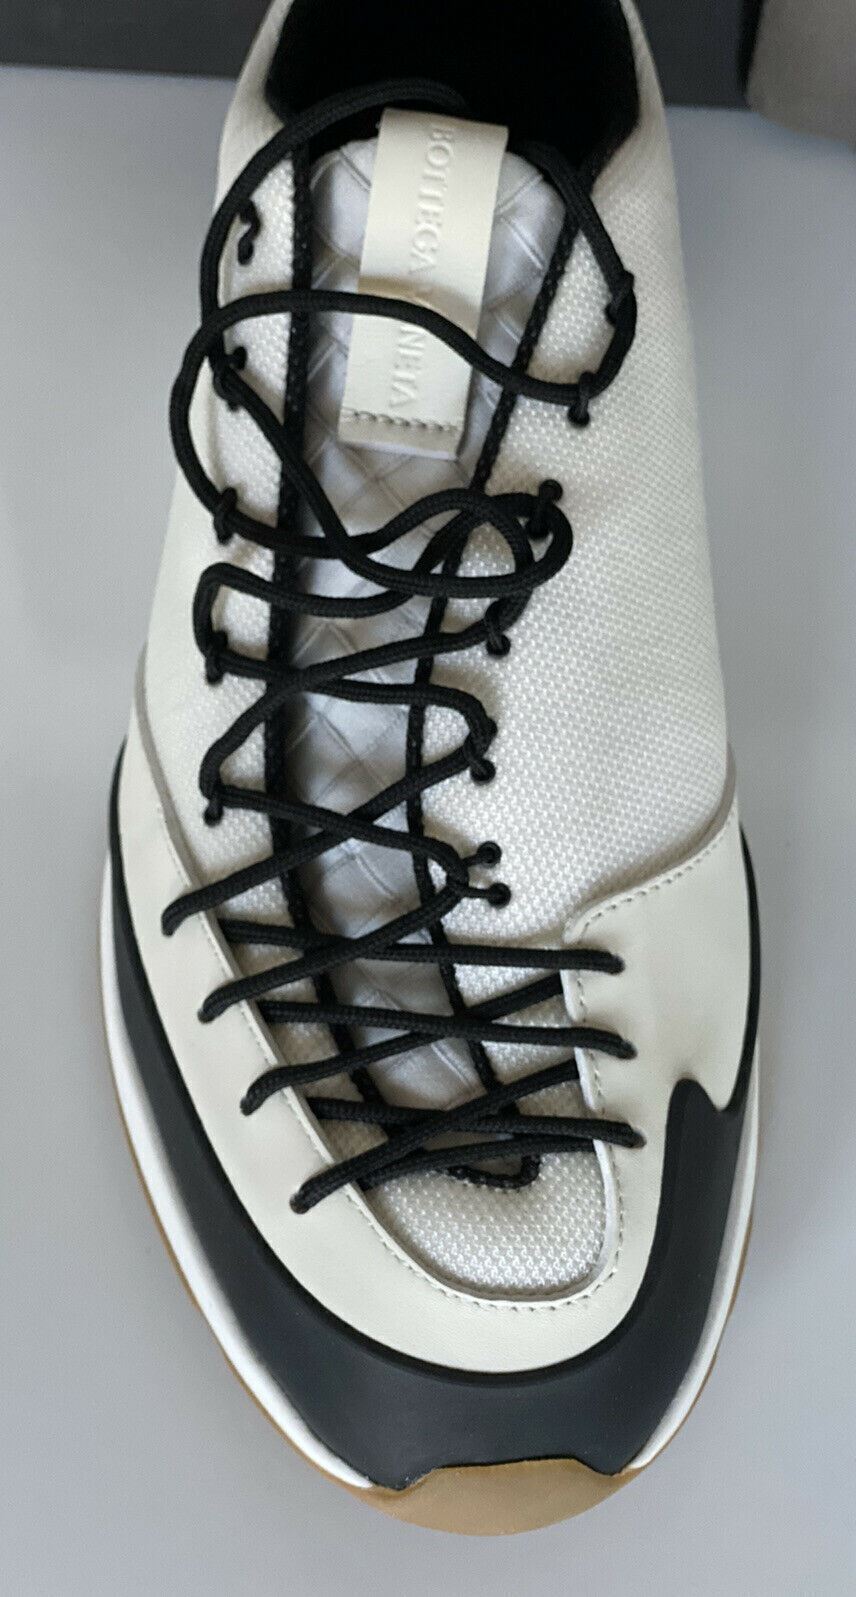 Мужские белые кроссовки Scar Tex Bottega Veneta 790 долларов США 8,5 США (41,5 евро) 609891 